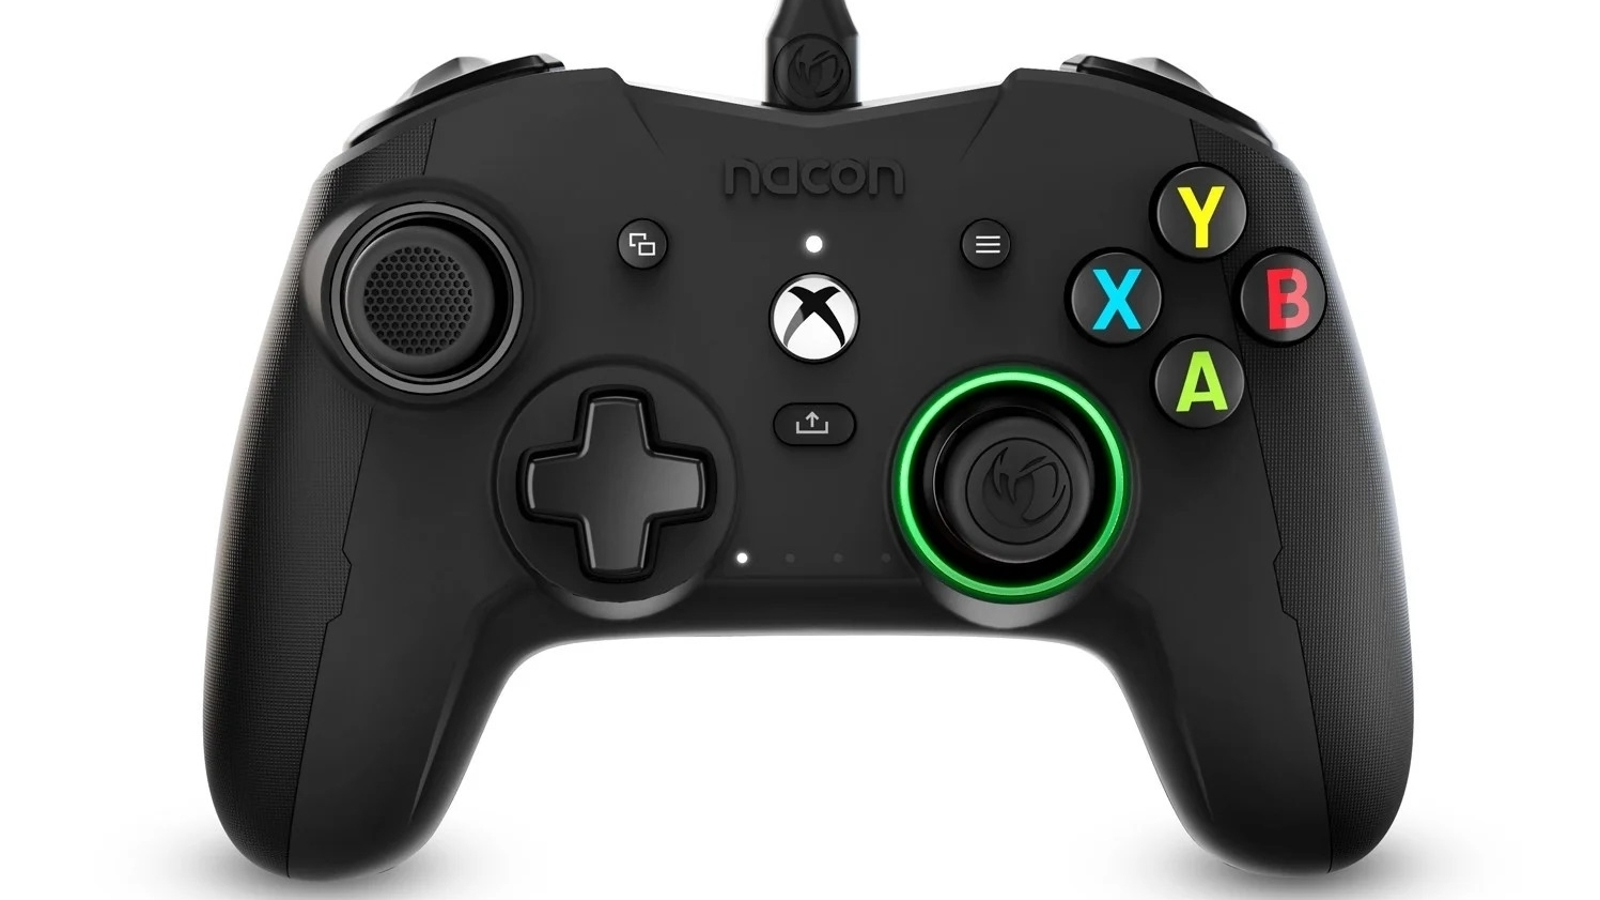 Xbox Series X Controller novedades y cambios del nuevo mando